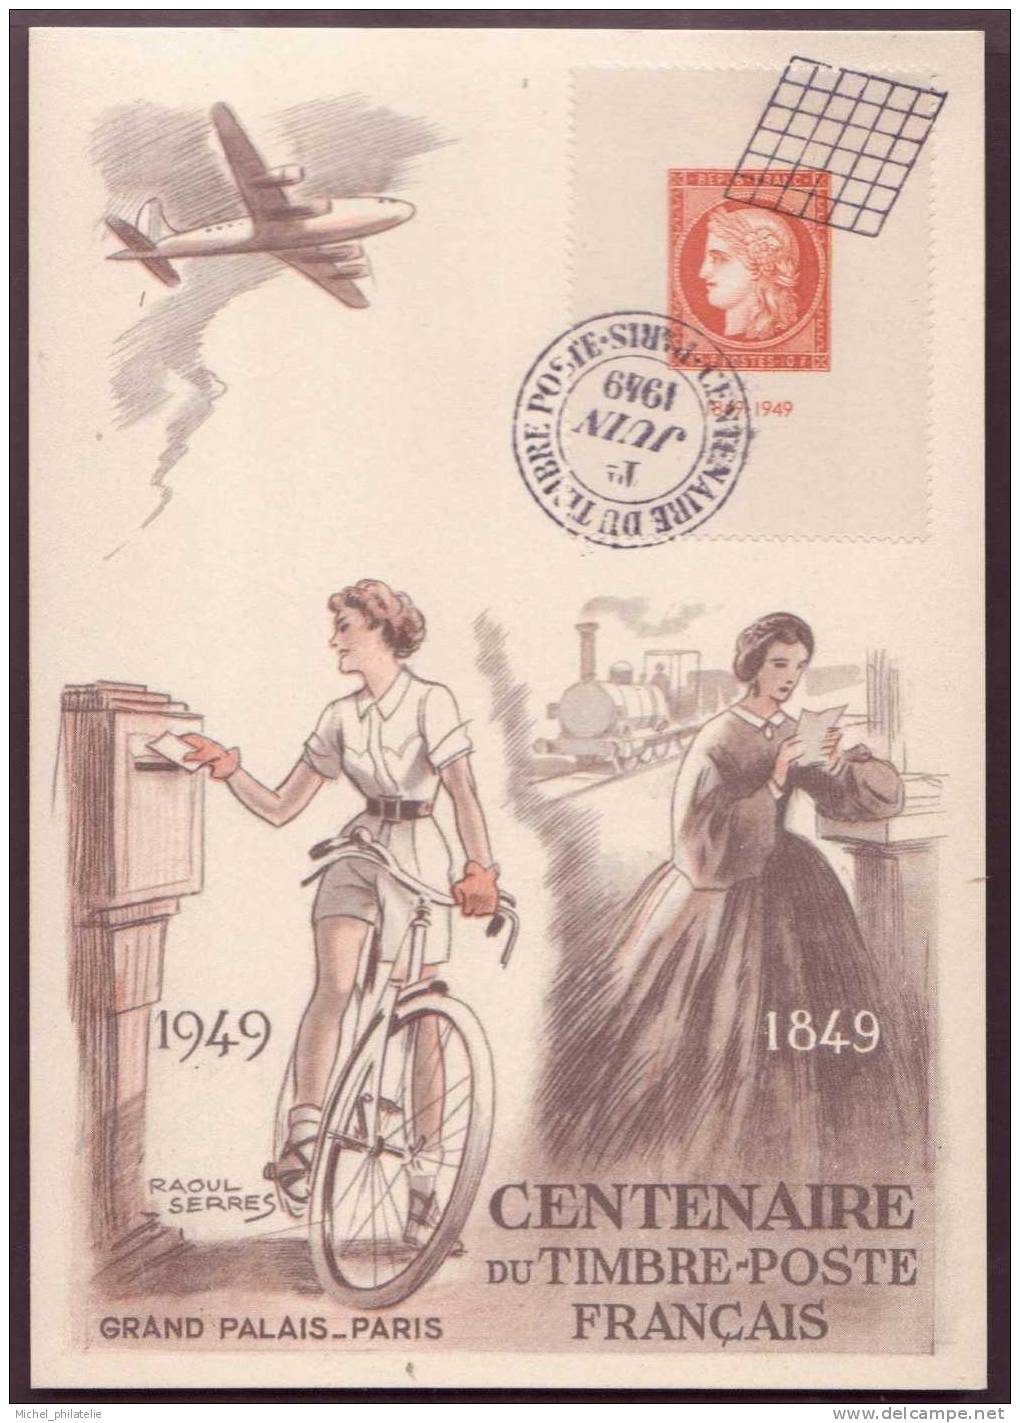 CARTE POSTALE  CENTENAIRE DU T.P 1849/1949 CITEX - Expositions